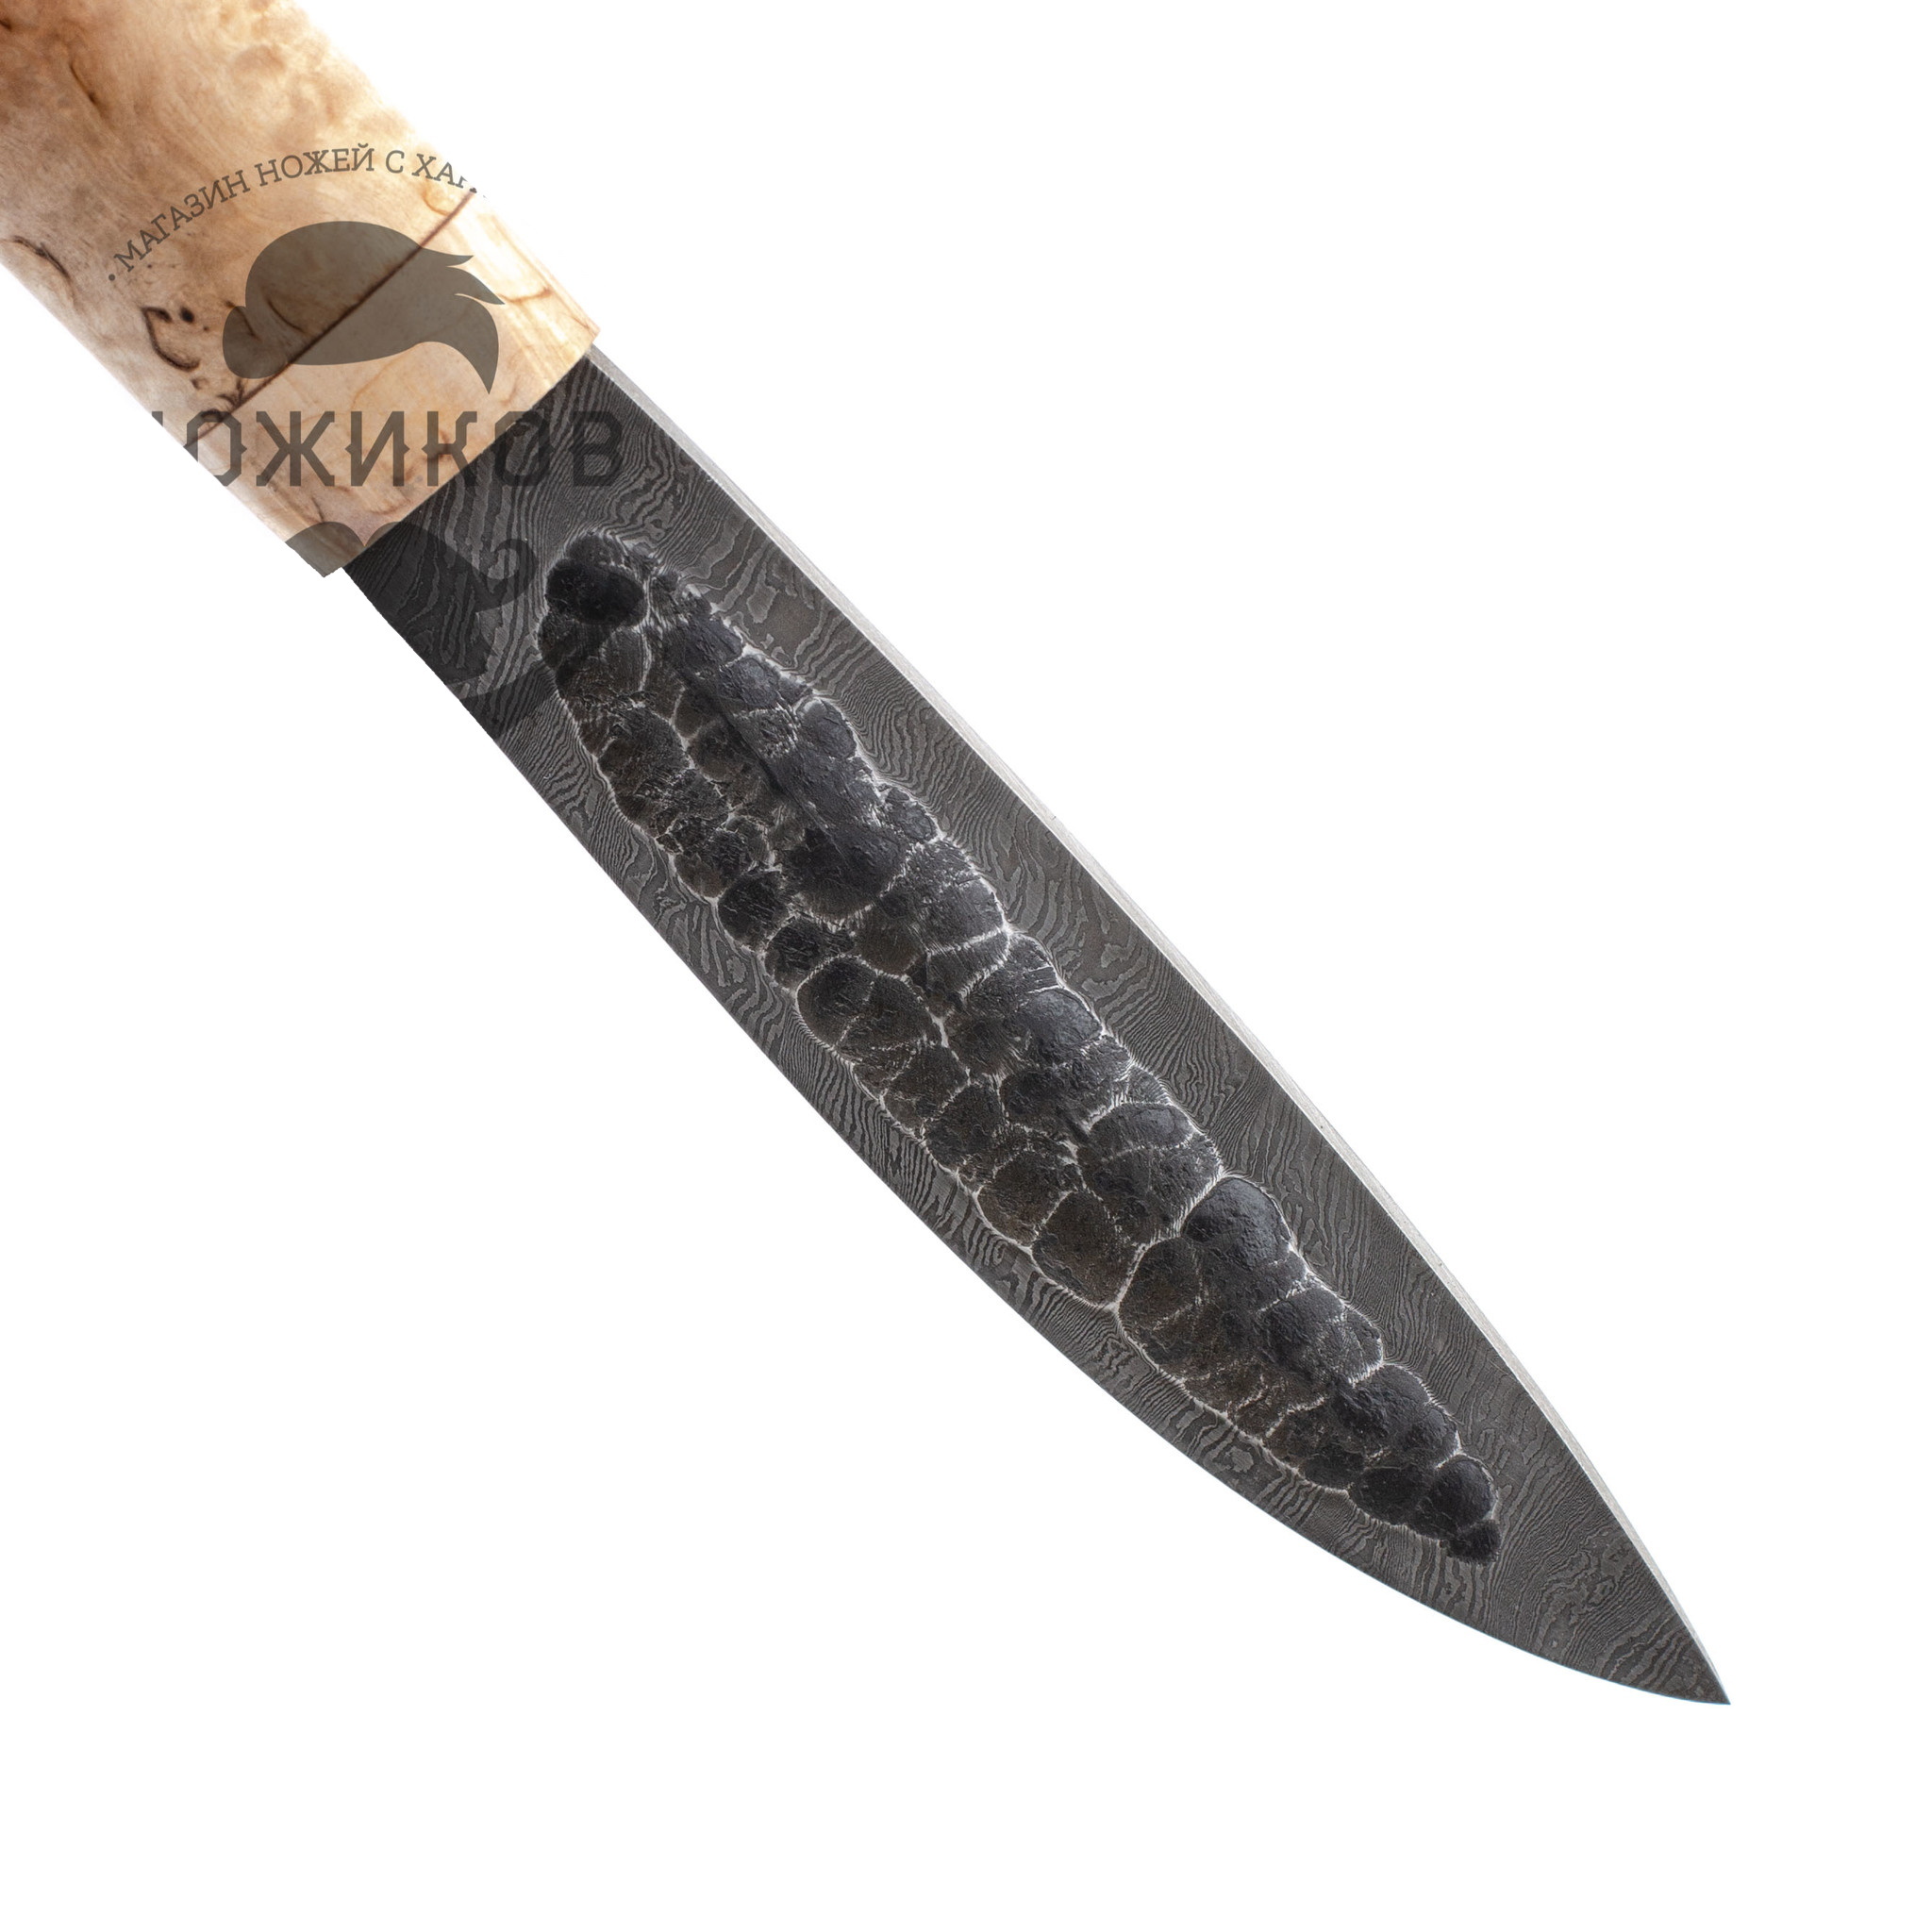 Нож Якутский средний, сталь дамаск, рукоять карельская береза - фото 3